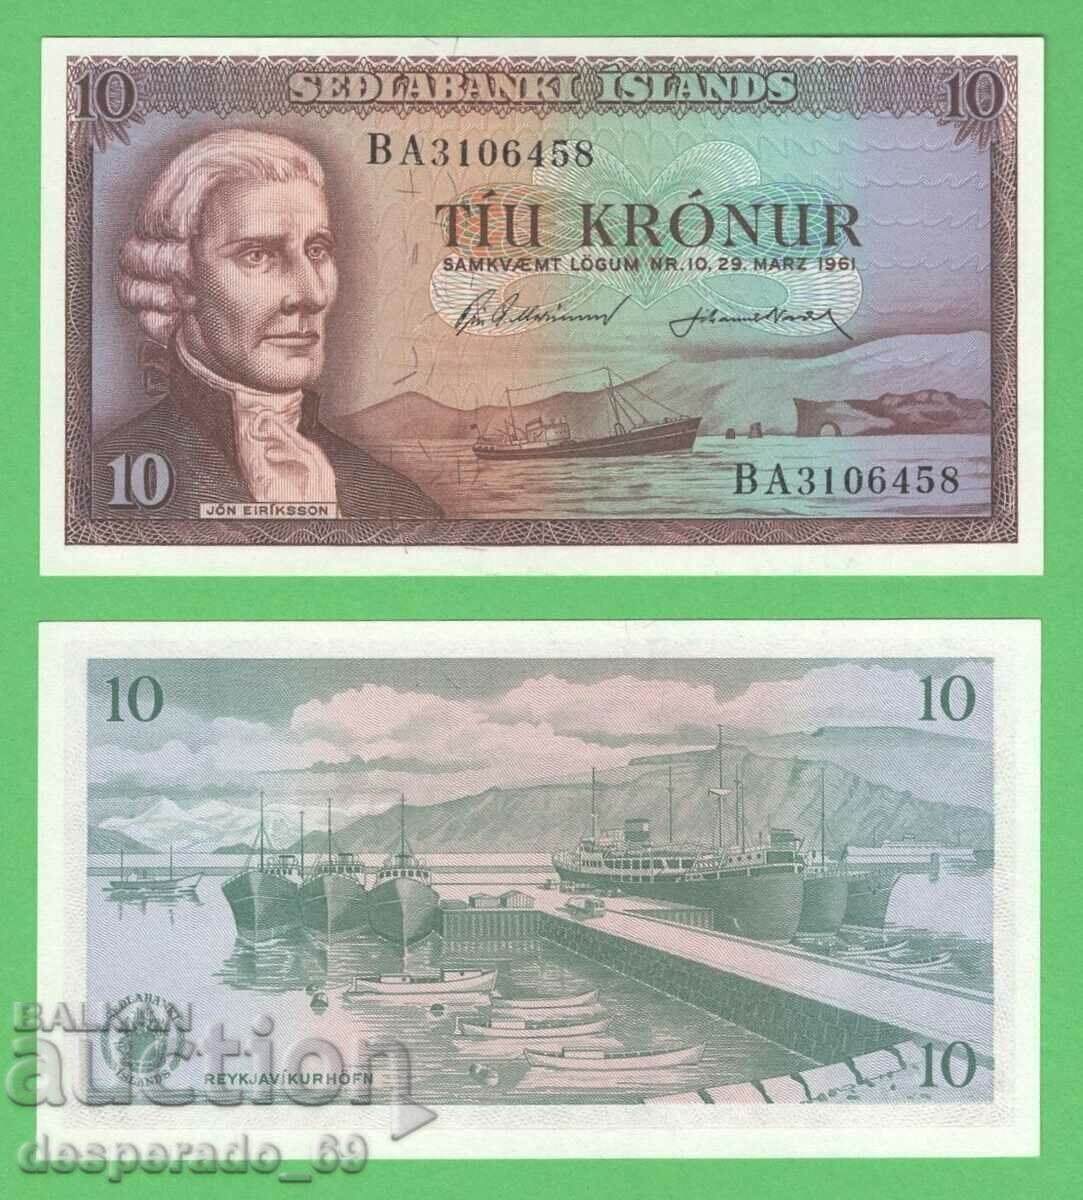 (¯`'•.¸ ICELAND 10 kroner 1961 UNC (1) ¸.•'´¯)